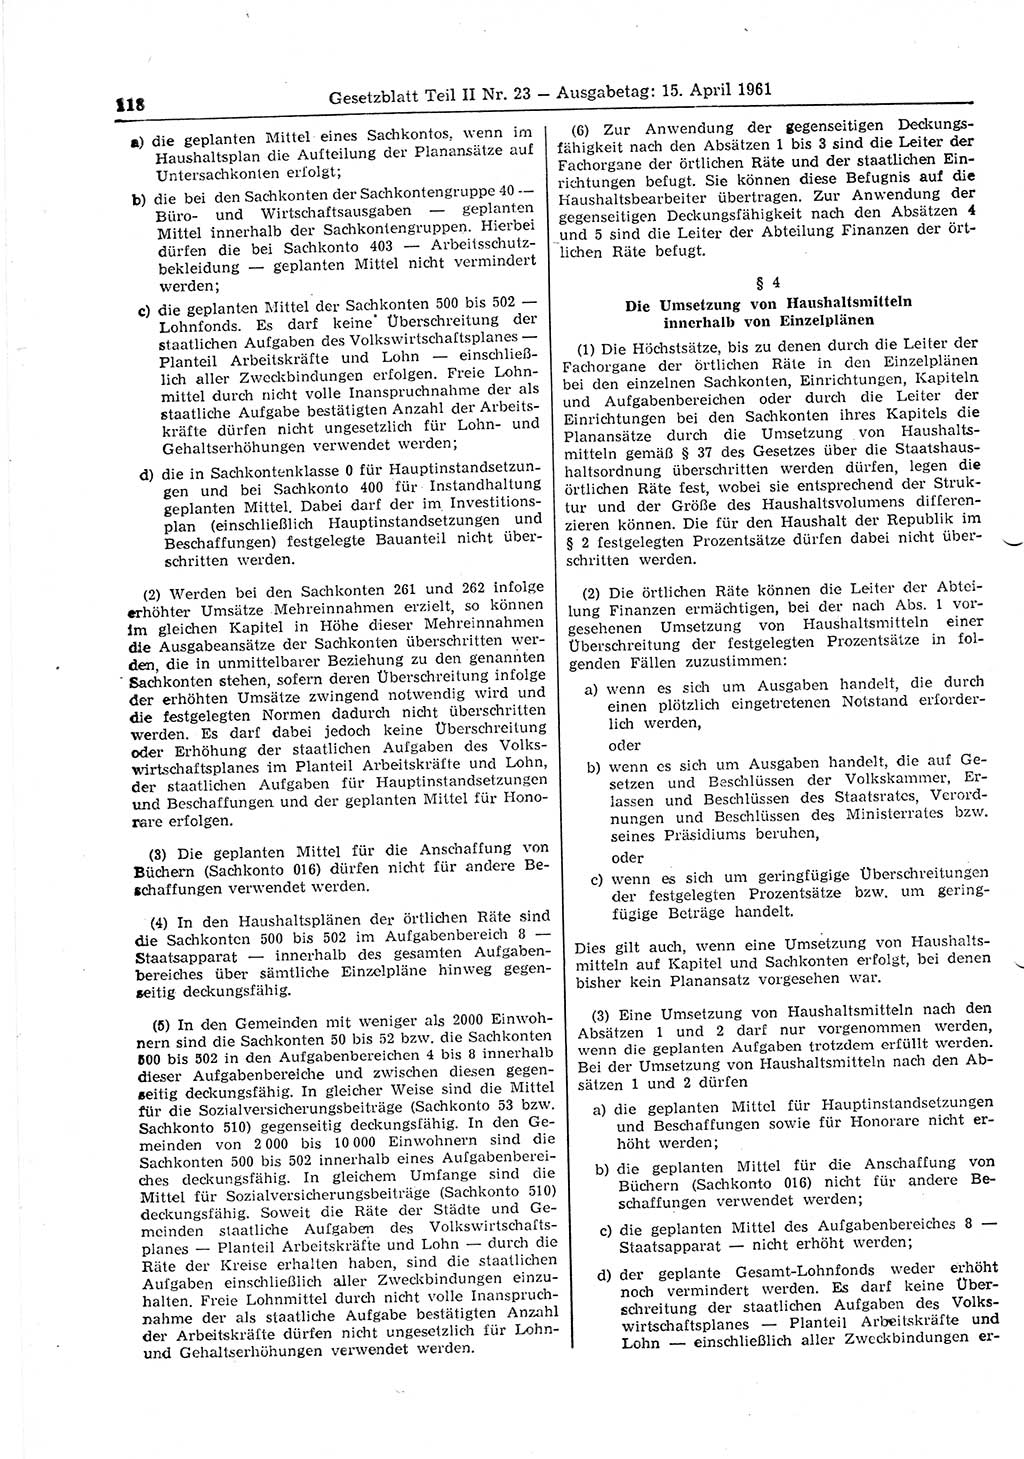 Gesetzblatt (GBl.) der Deutschen Demokratischen Republik (DDR) Teil ⅠⅠ 1961, Seite 118 (GBl. DDR ⅠⅠ 1961, S. 118)